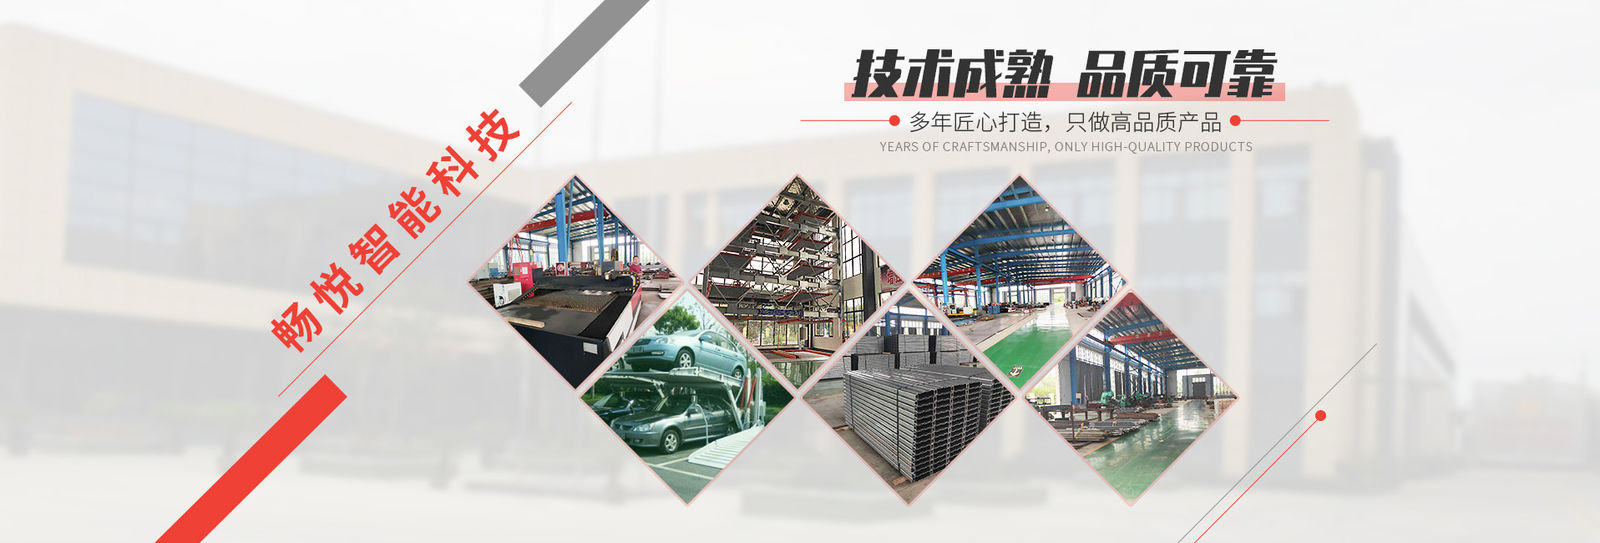 중국 Shanghai Changyue Automation Machinery Co., Ltd. 회사 프로필